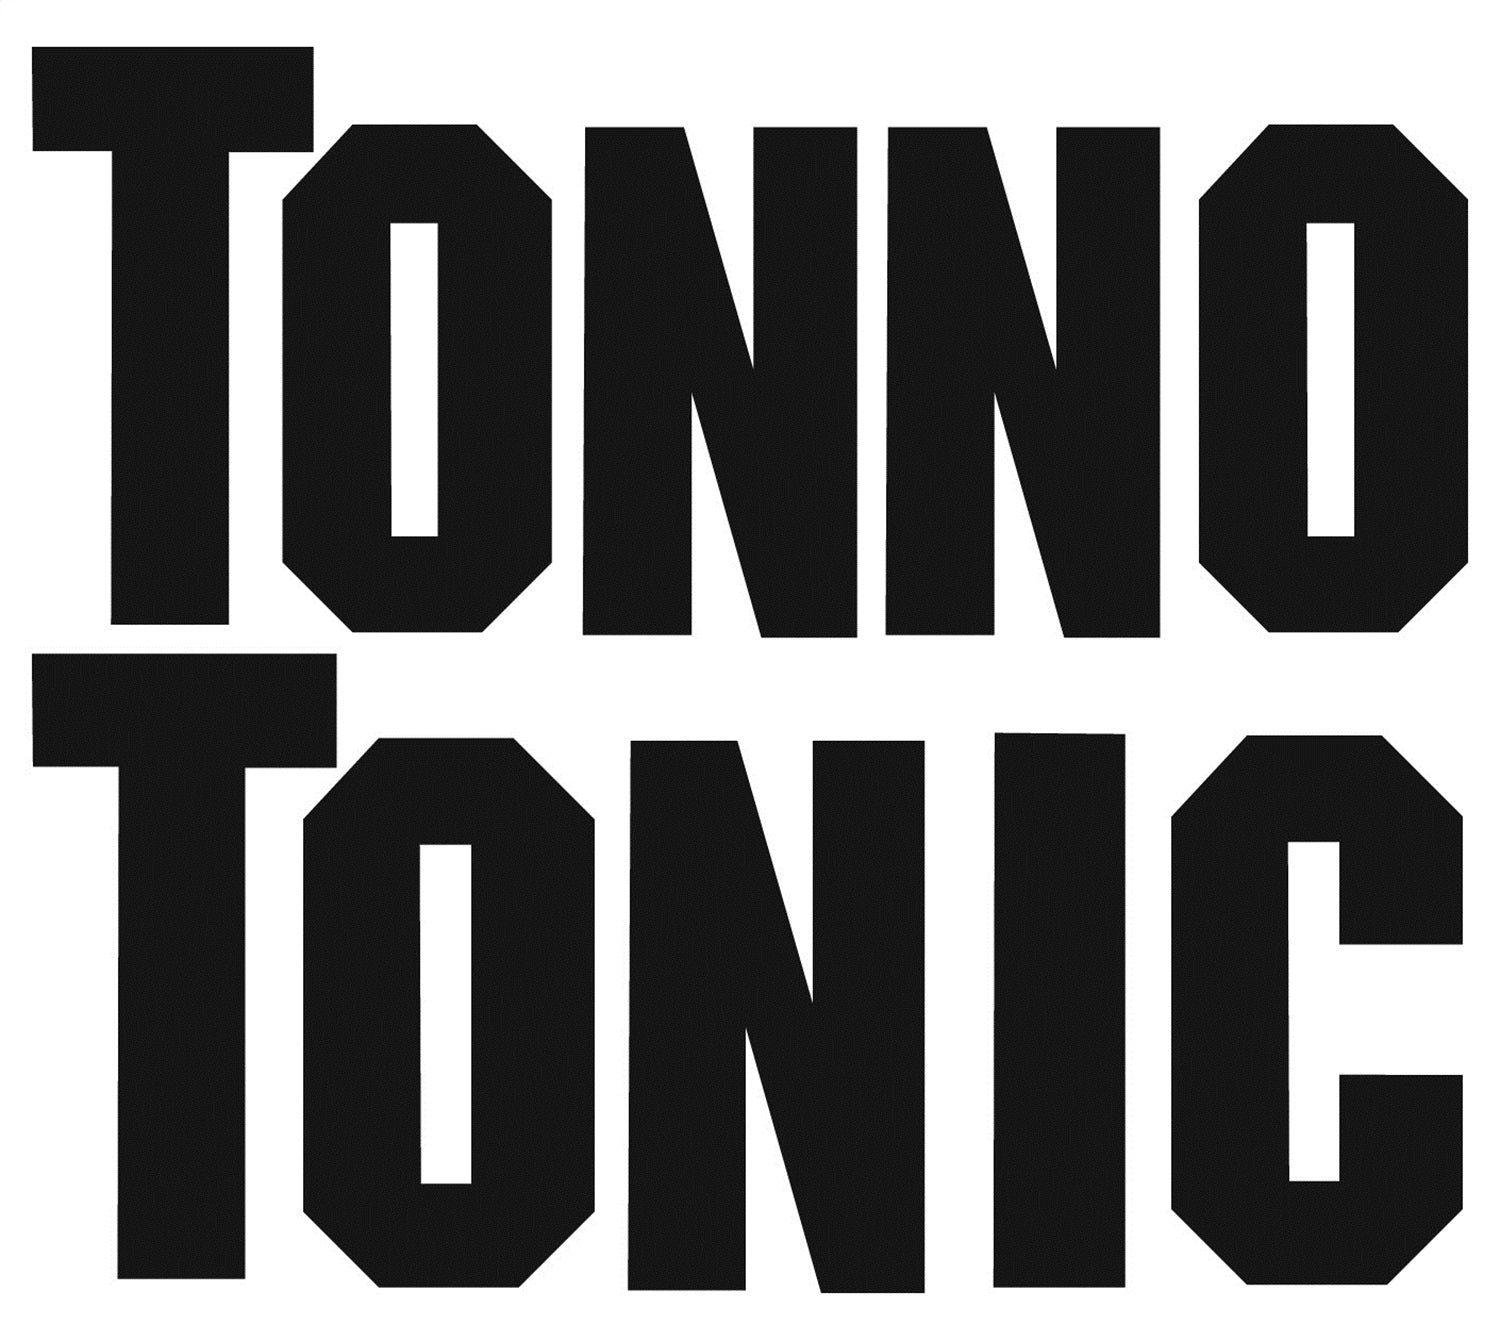 EX_Tonno_Tonic_Logo.jpg